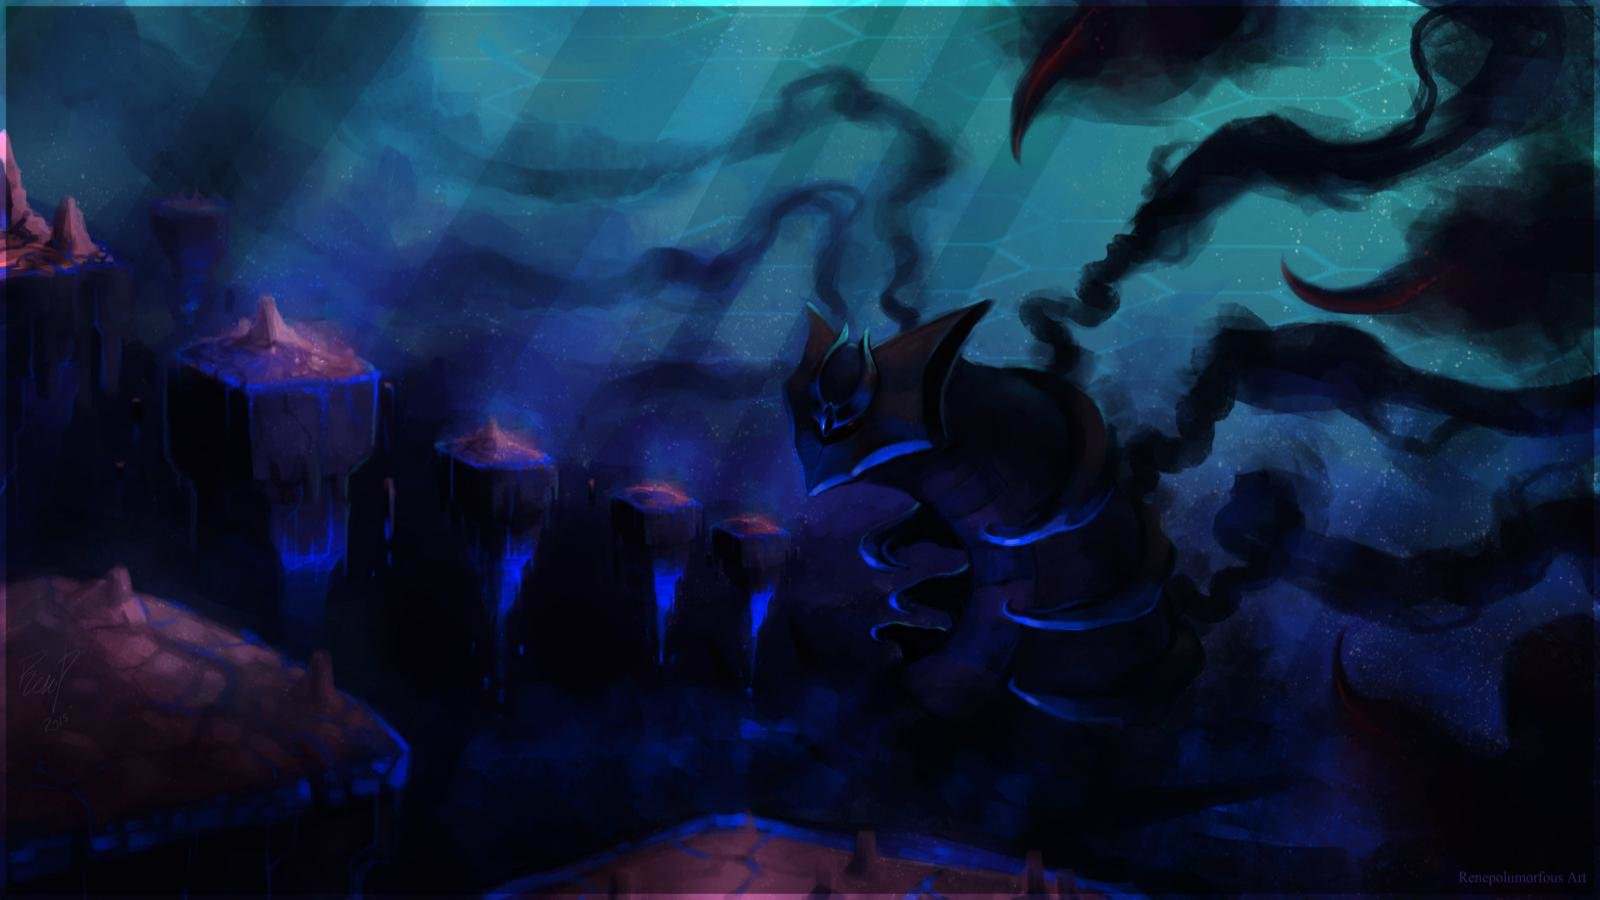 Giratina (Pokemon) wallpaper HD for desktop background